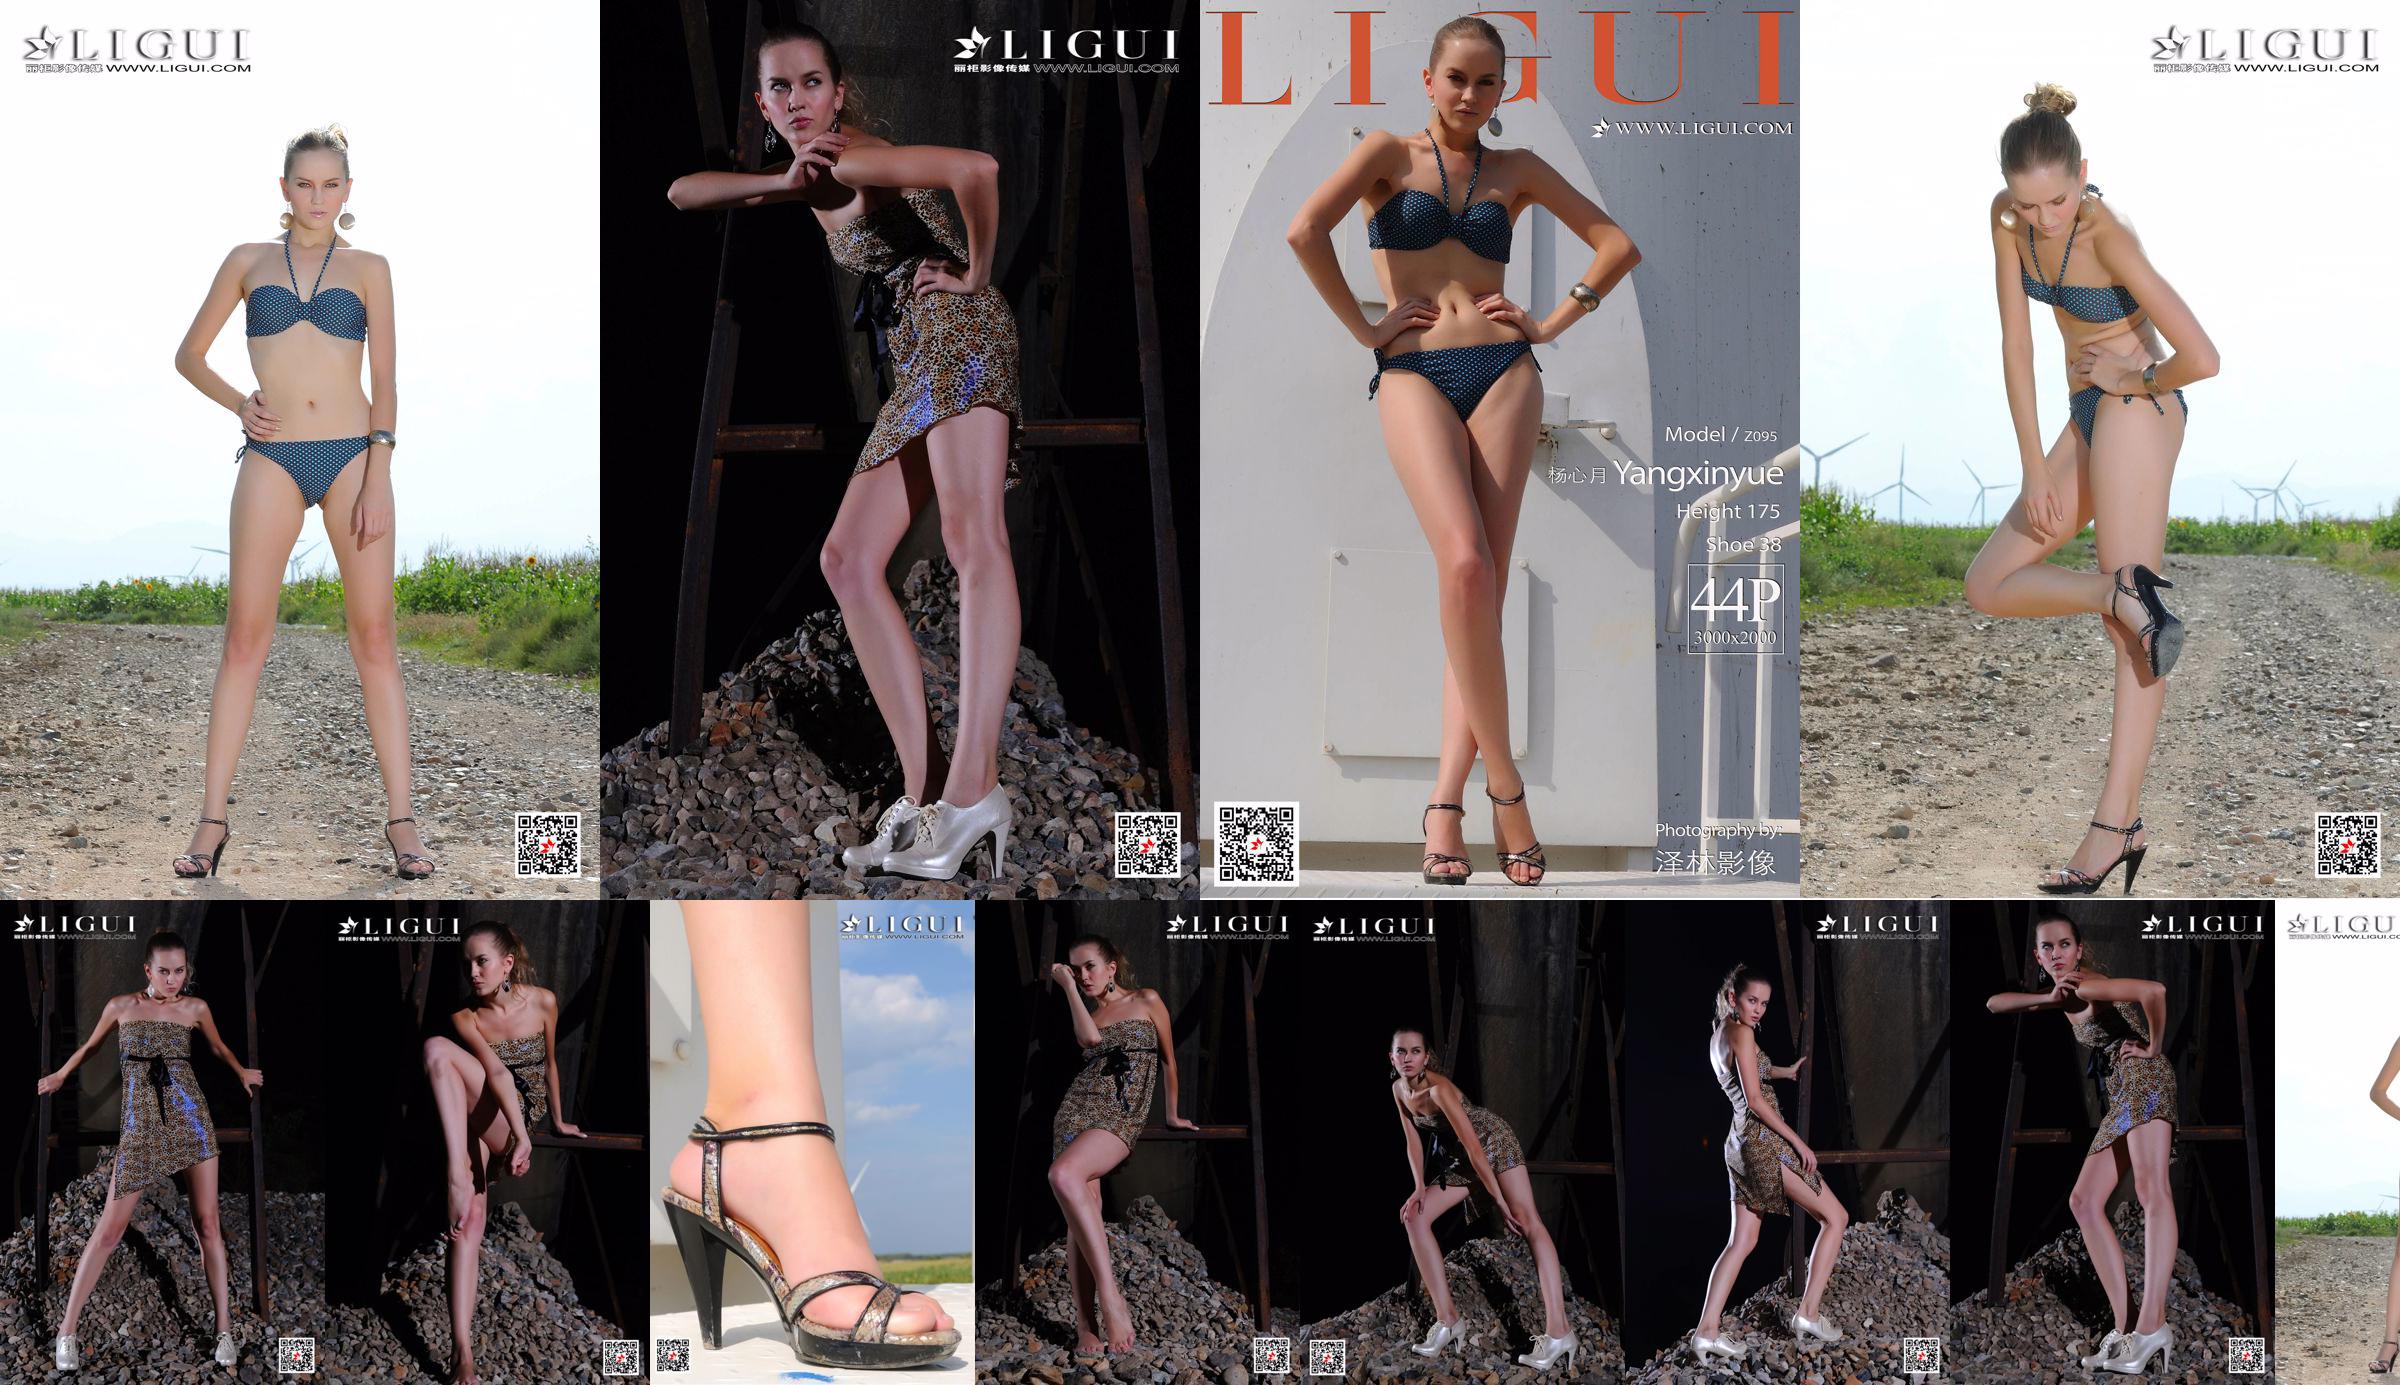 [丽 柜 Ligui] Model Yang Xinyue "Bikini" No.881bc3 Pagina 1